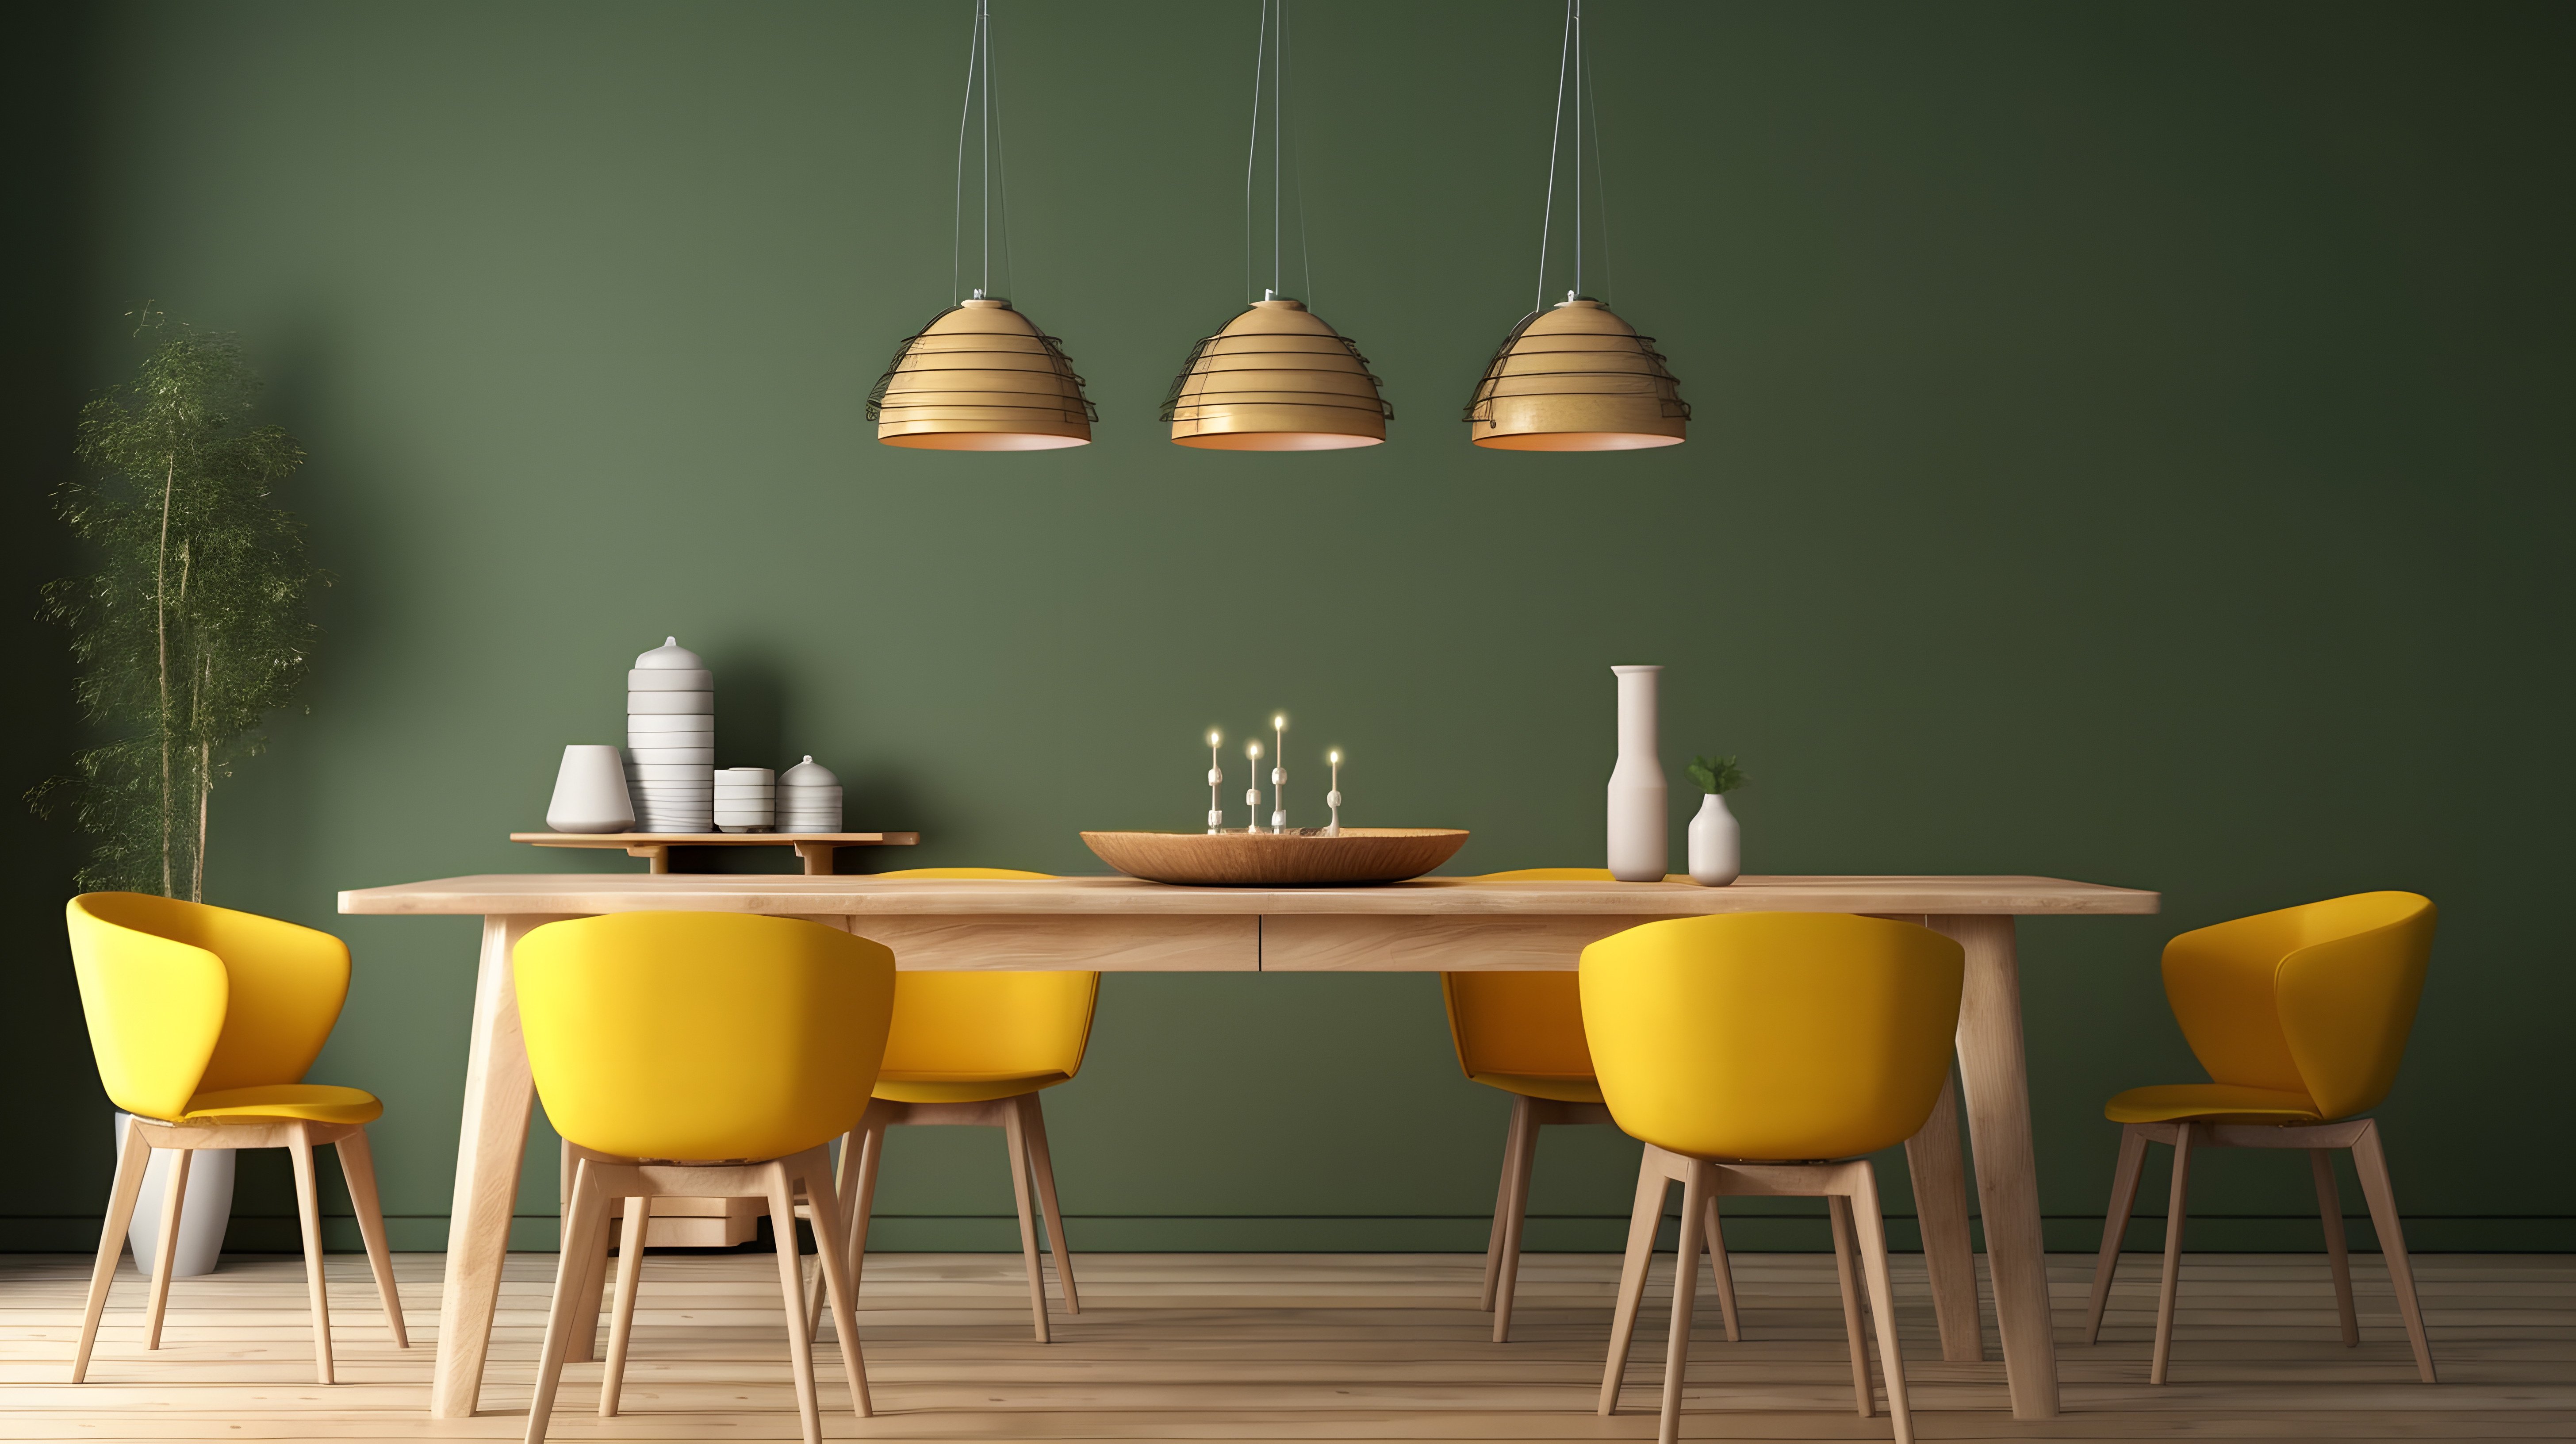 Ein ausziehbarer Esstisch ist umgeben von sechs gelben Stühlen. Der Tisch ist aus Holz. Auf dem Tisch stehen Deko- Elemente. Über dem Tisch hängt eine Lampe.